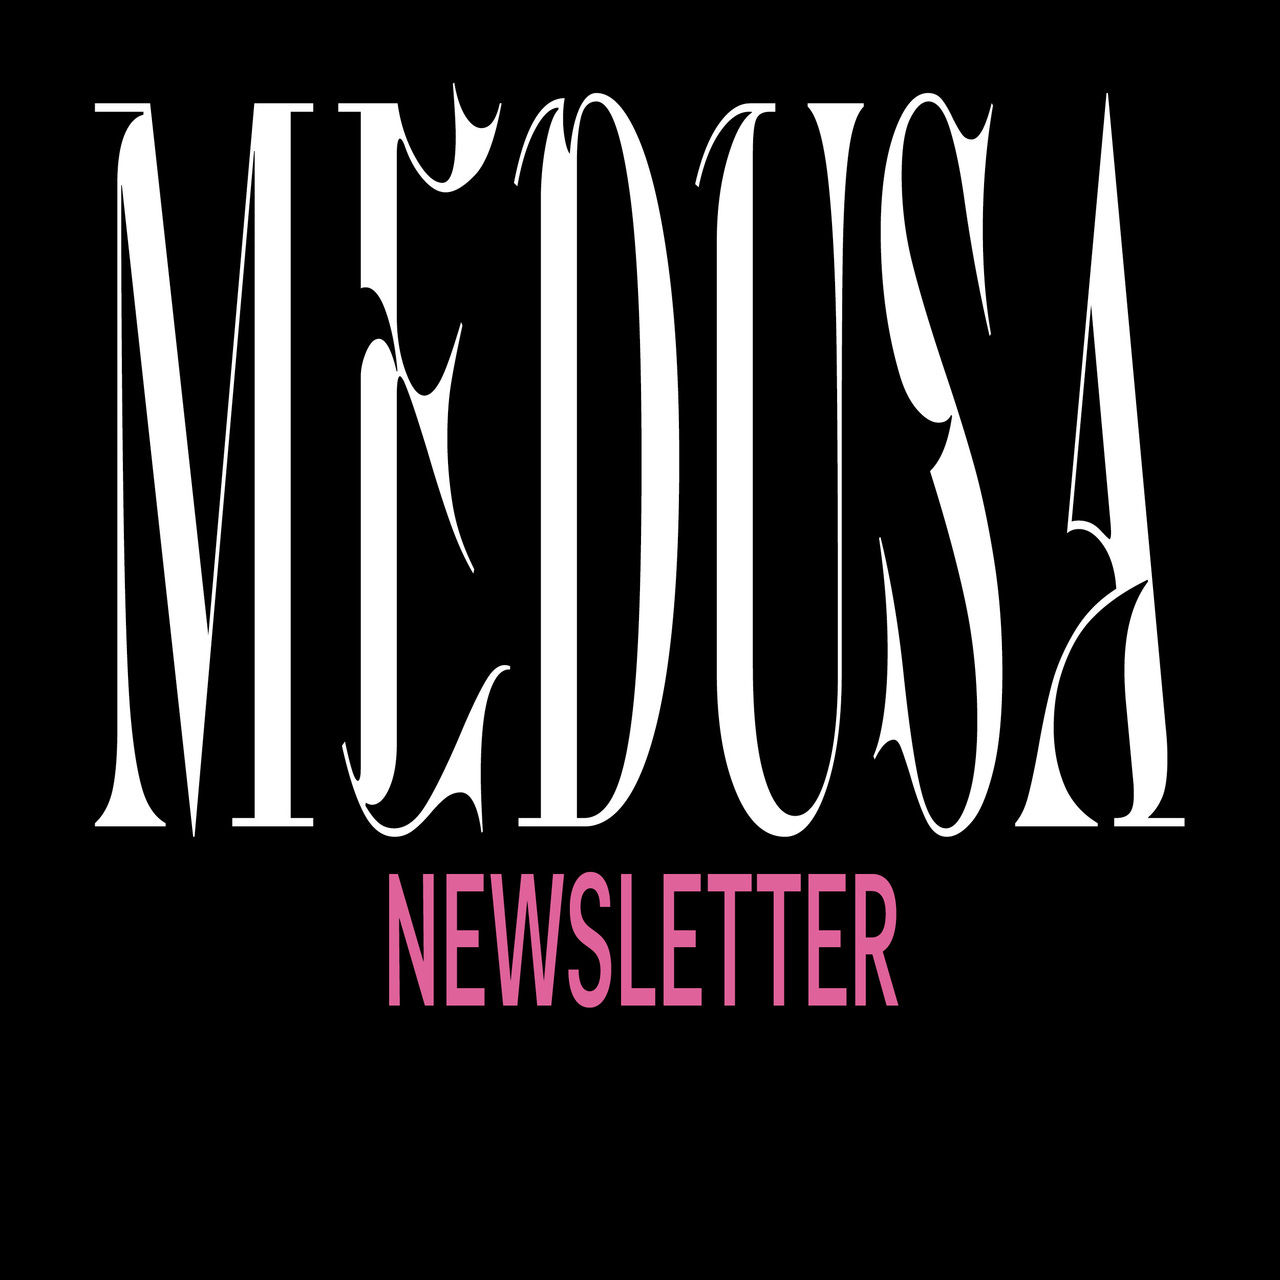 MEDUSA newsletter